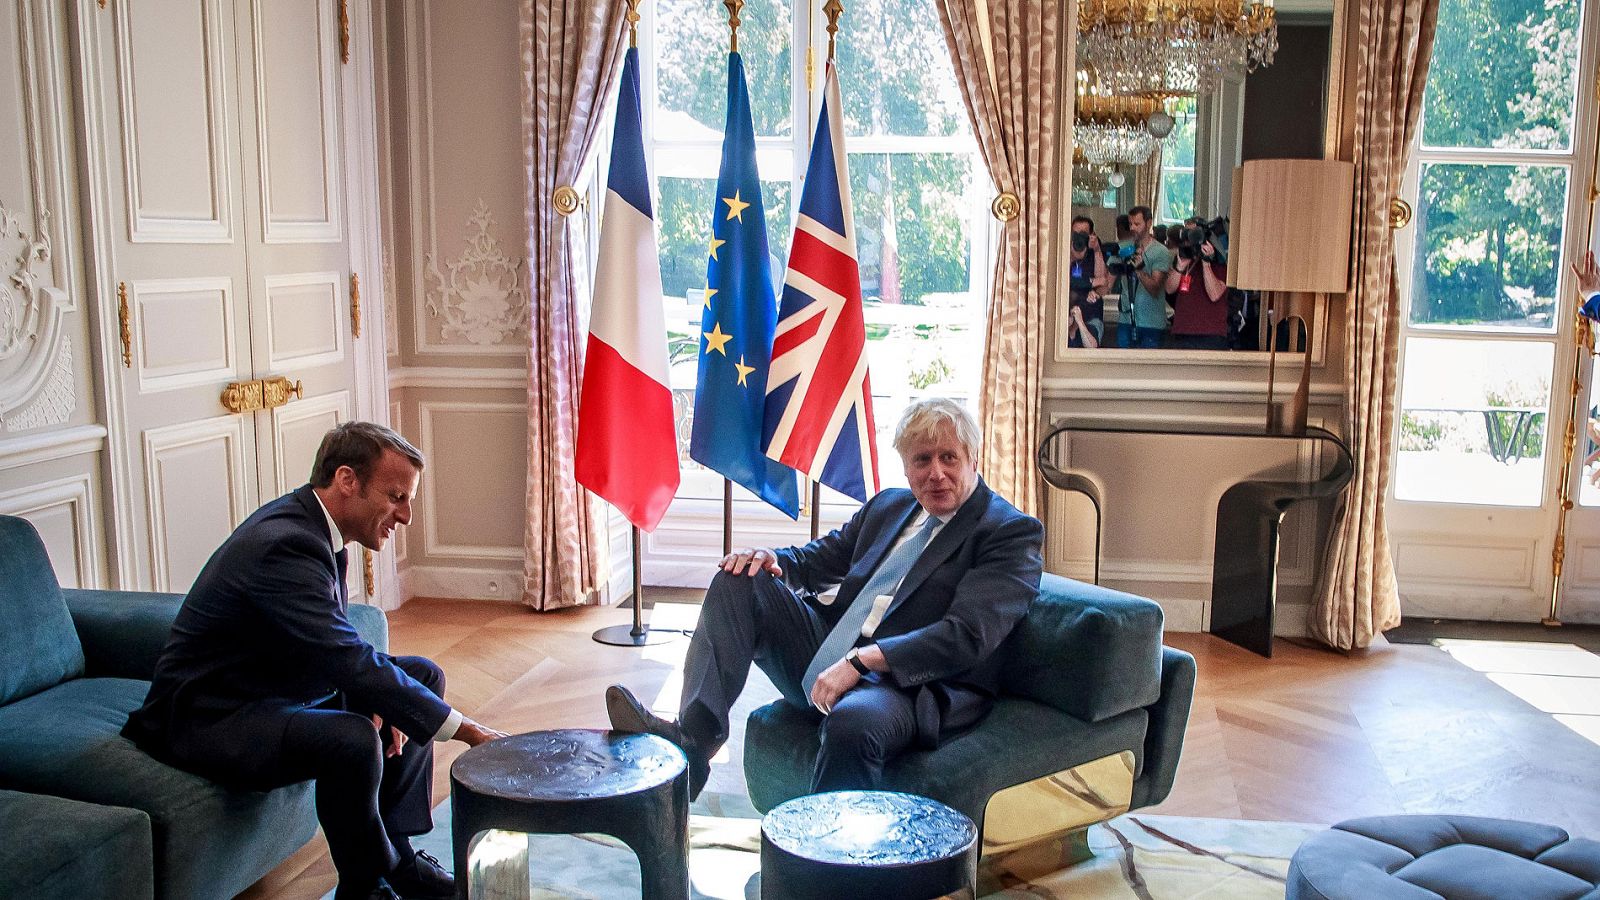 24 horas - Macron avisa a Johnson de que no se puede renegociar el Brexit - Escuchar ahora